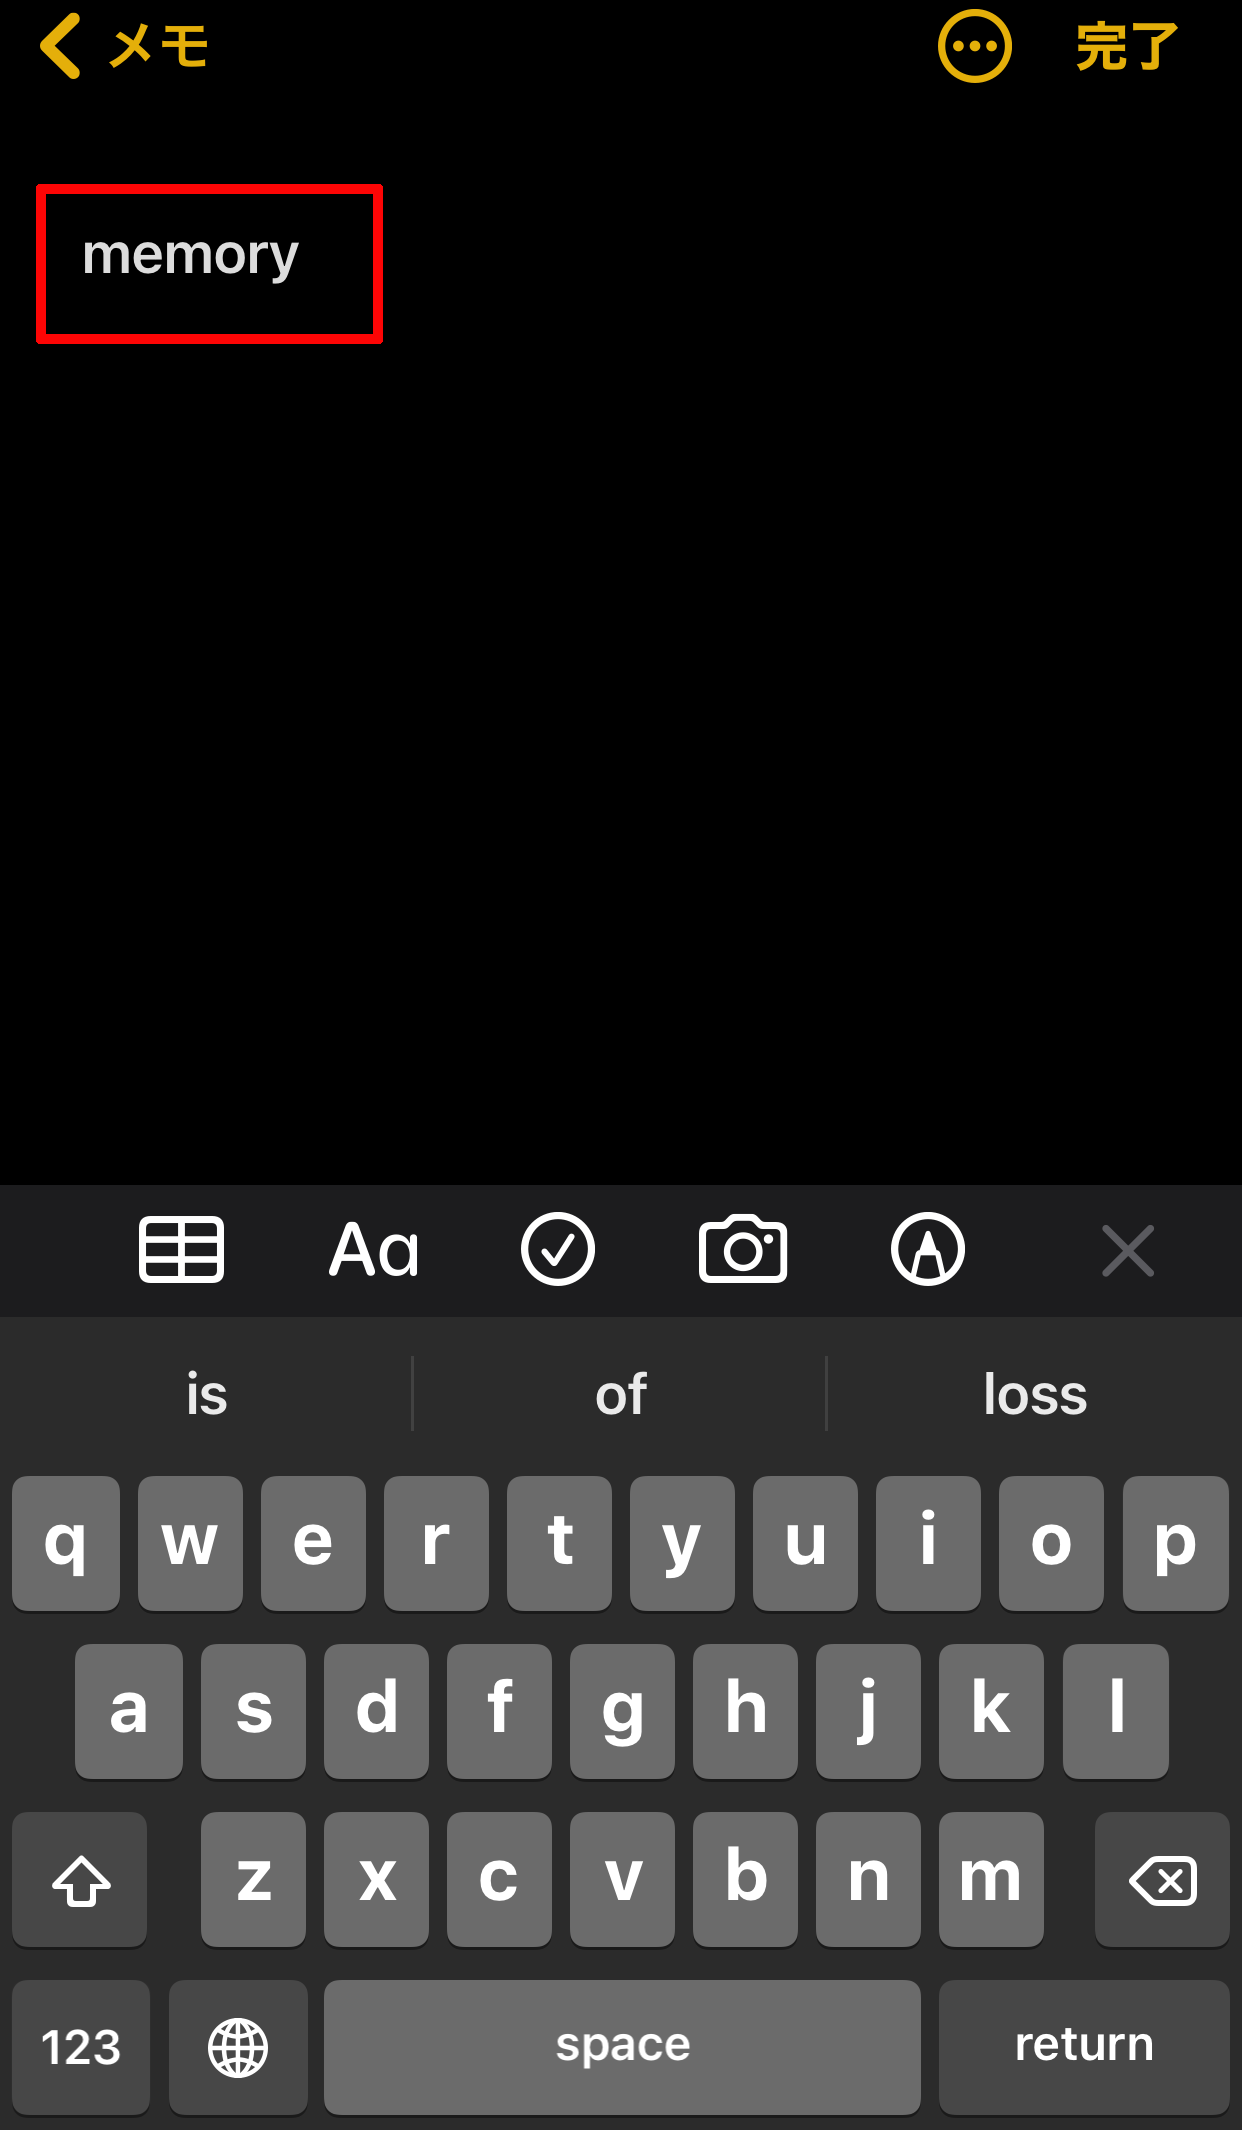 【iPhoneiPad】キーボード入力での英字入力の際に頭文字が自動で大文字にならないようにする設定方法